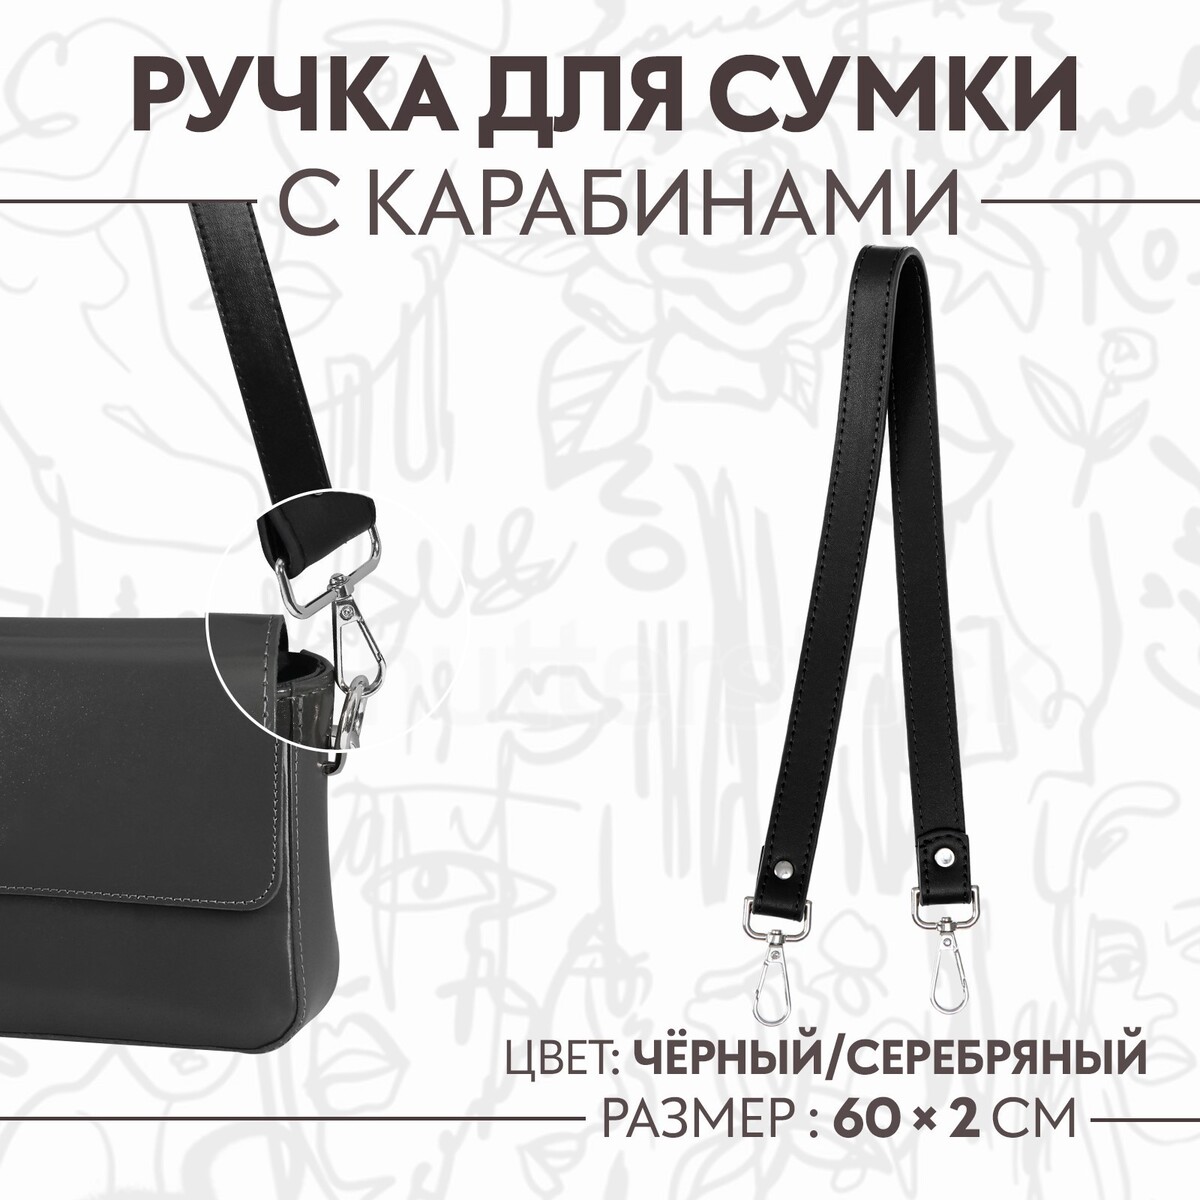 Ручка для сумки, с карабинами, 60 × 2 см, цвет черный